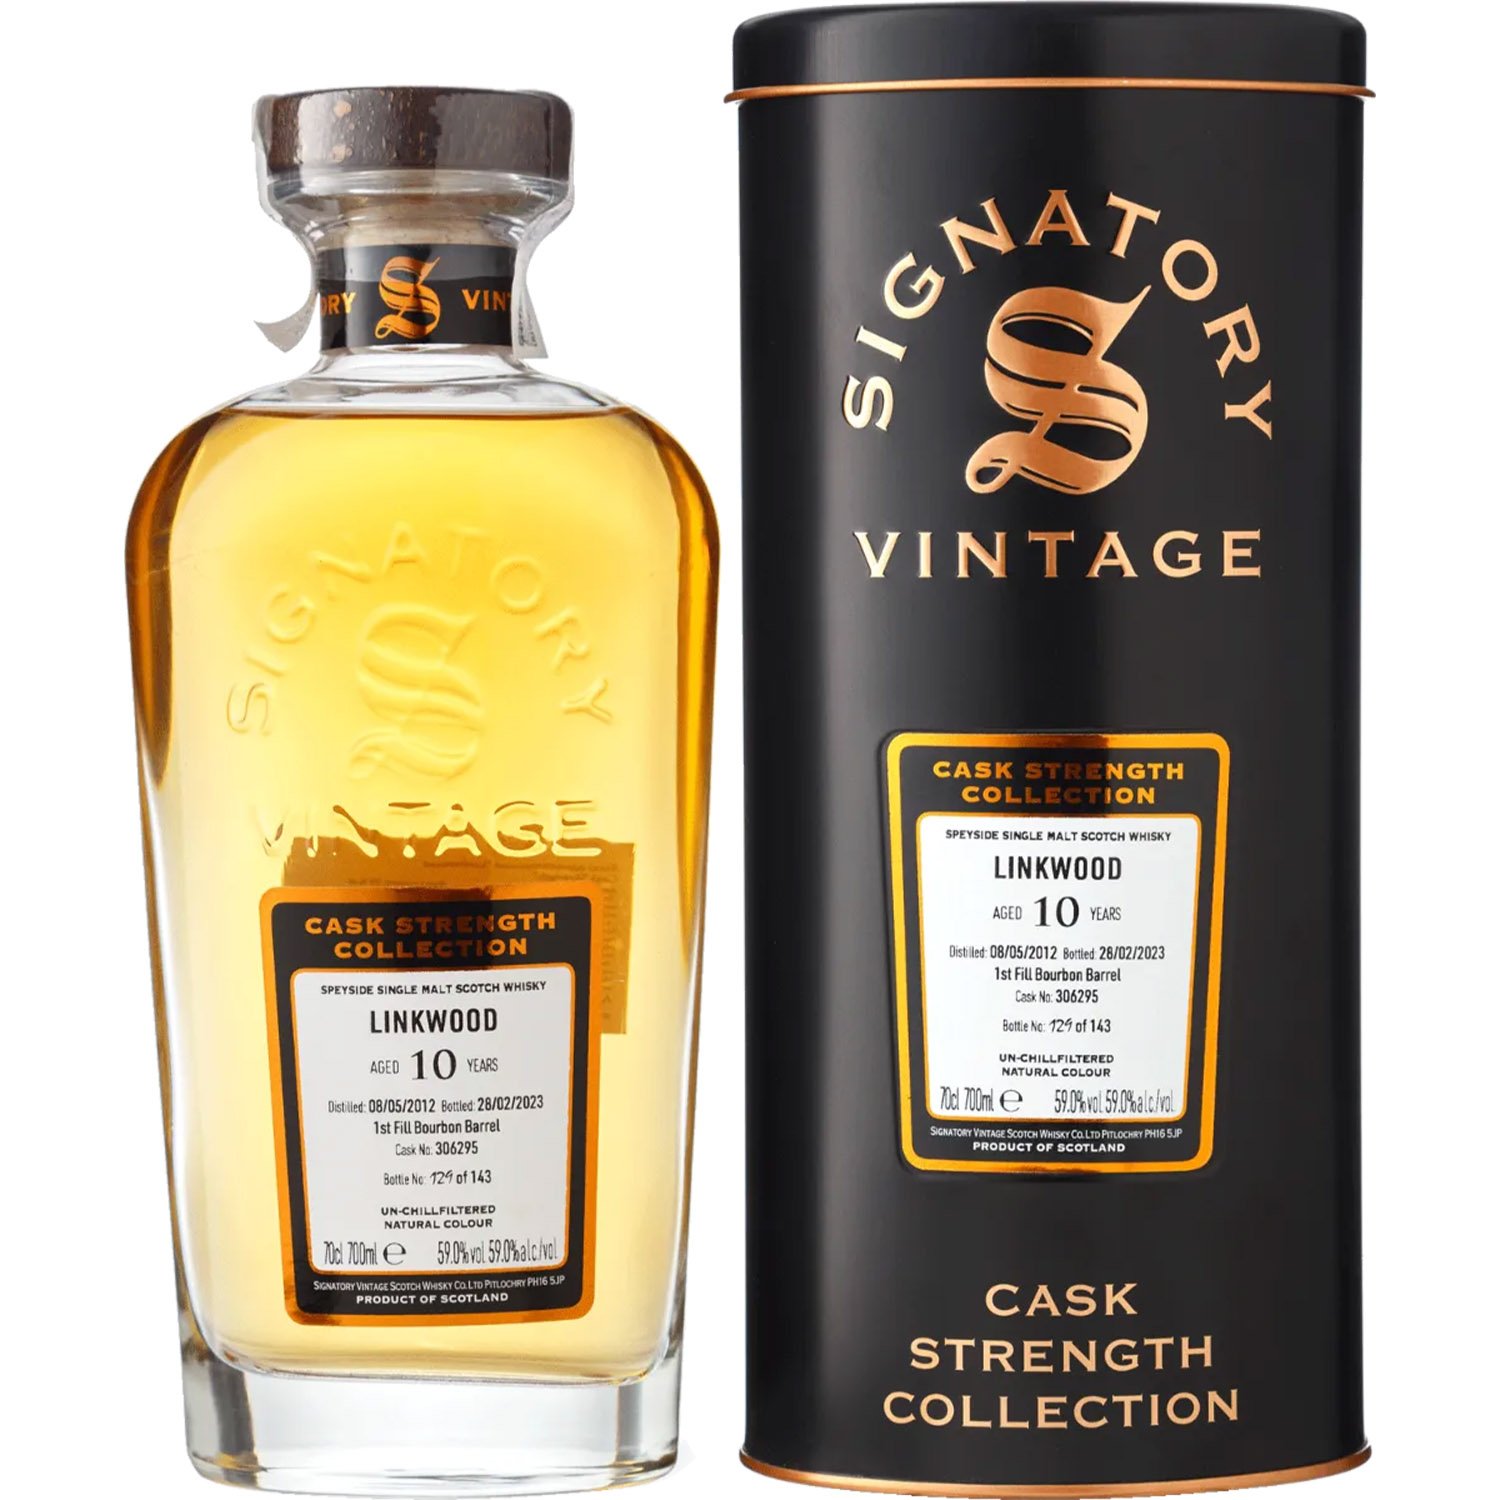 Віскі Signatory Vintage Linkwood 10 yo Cask Strength 2012 Single Malt Scotch Whisky 59% 0.7 л у подарунковій коробці - фото 1